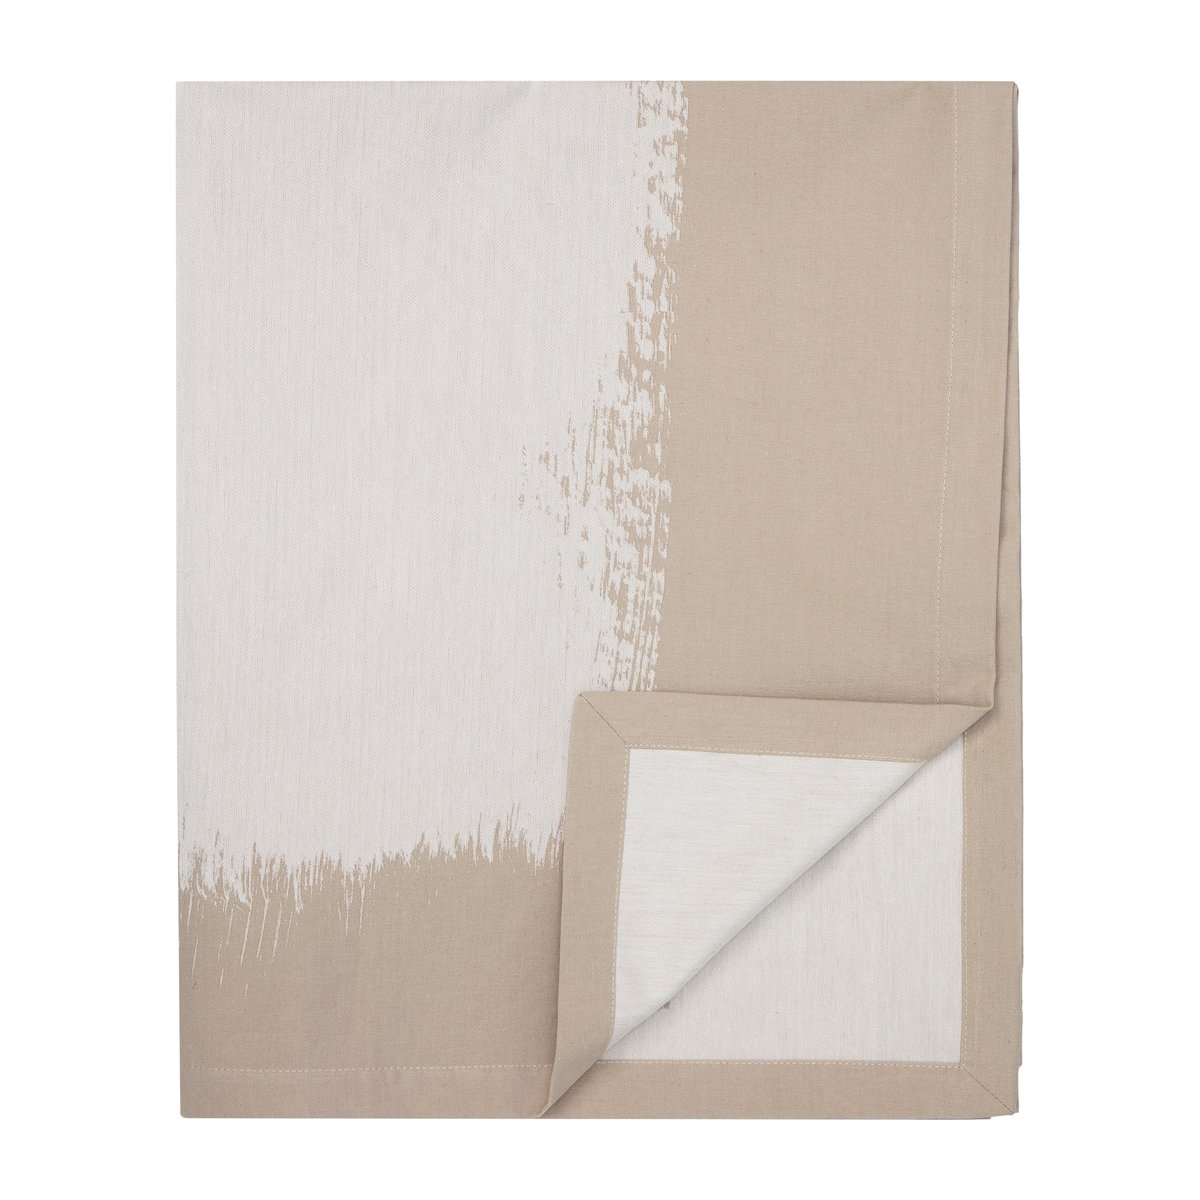 Marimekko Kuiskaus tafelkleed 170x130 cm wit-beige